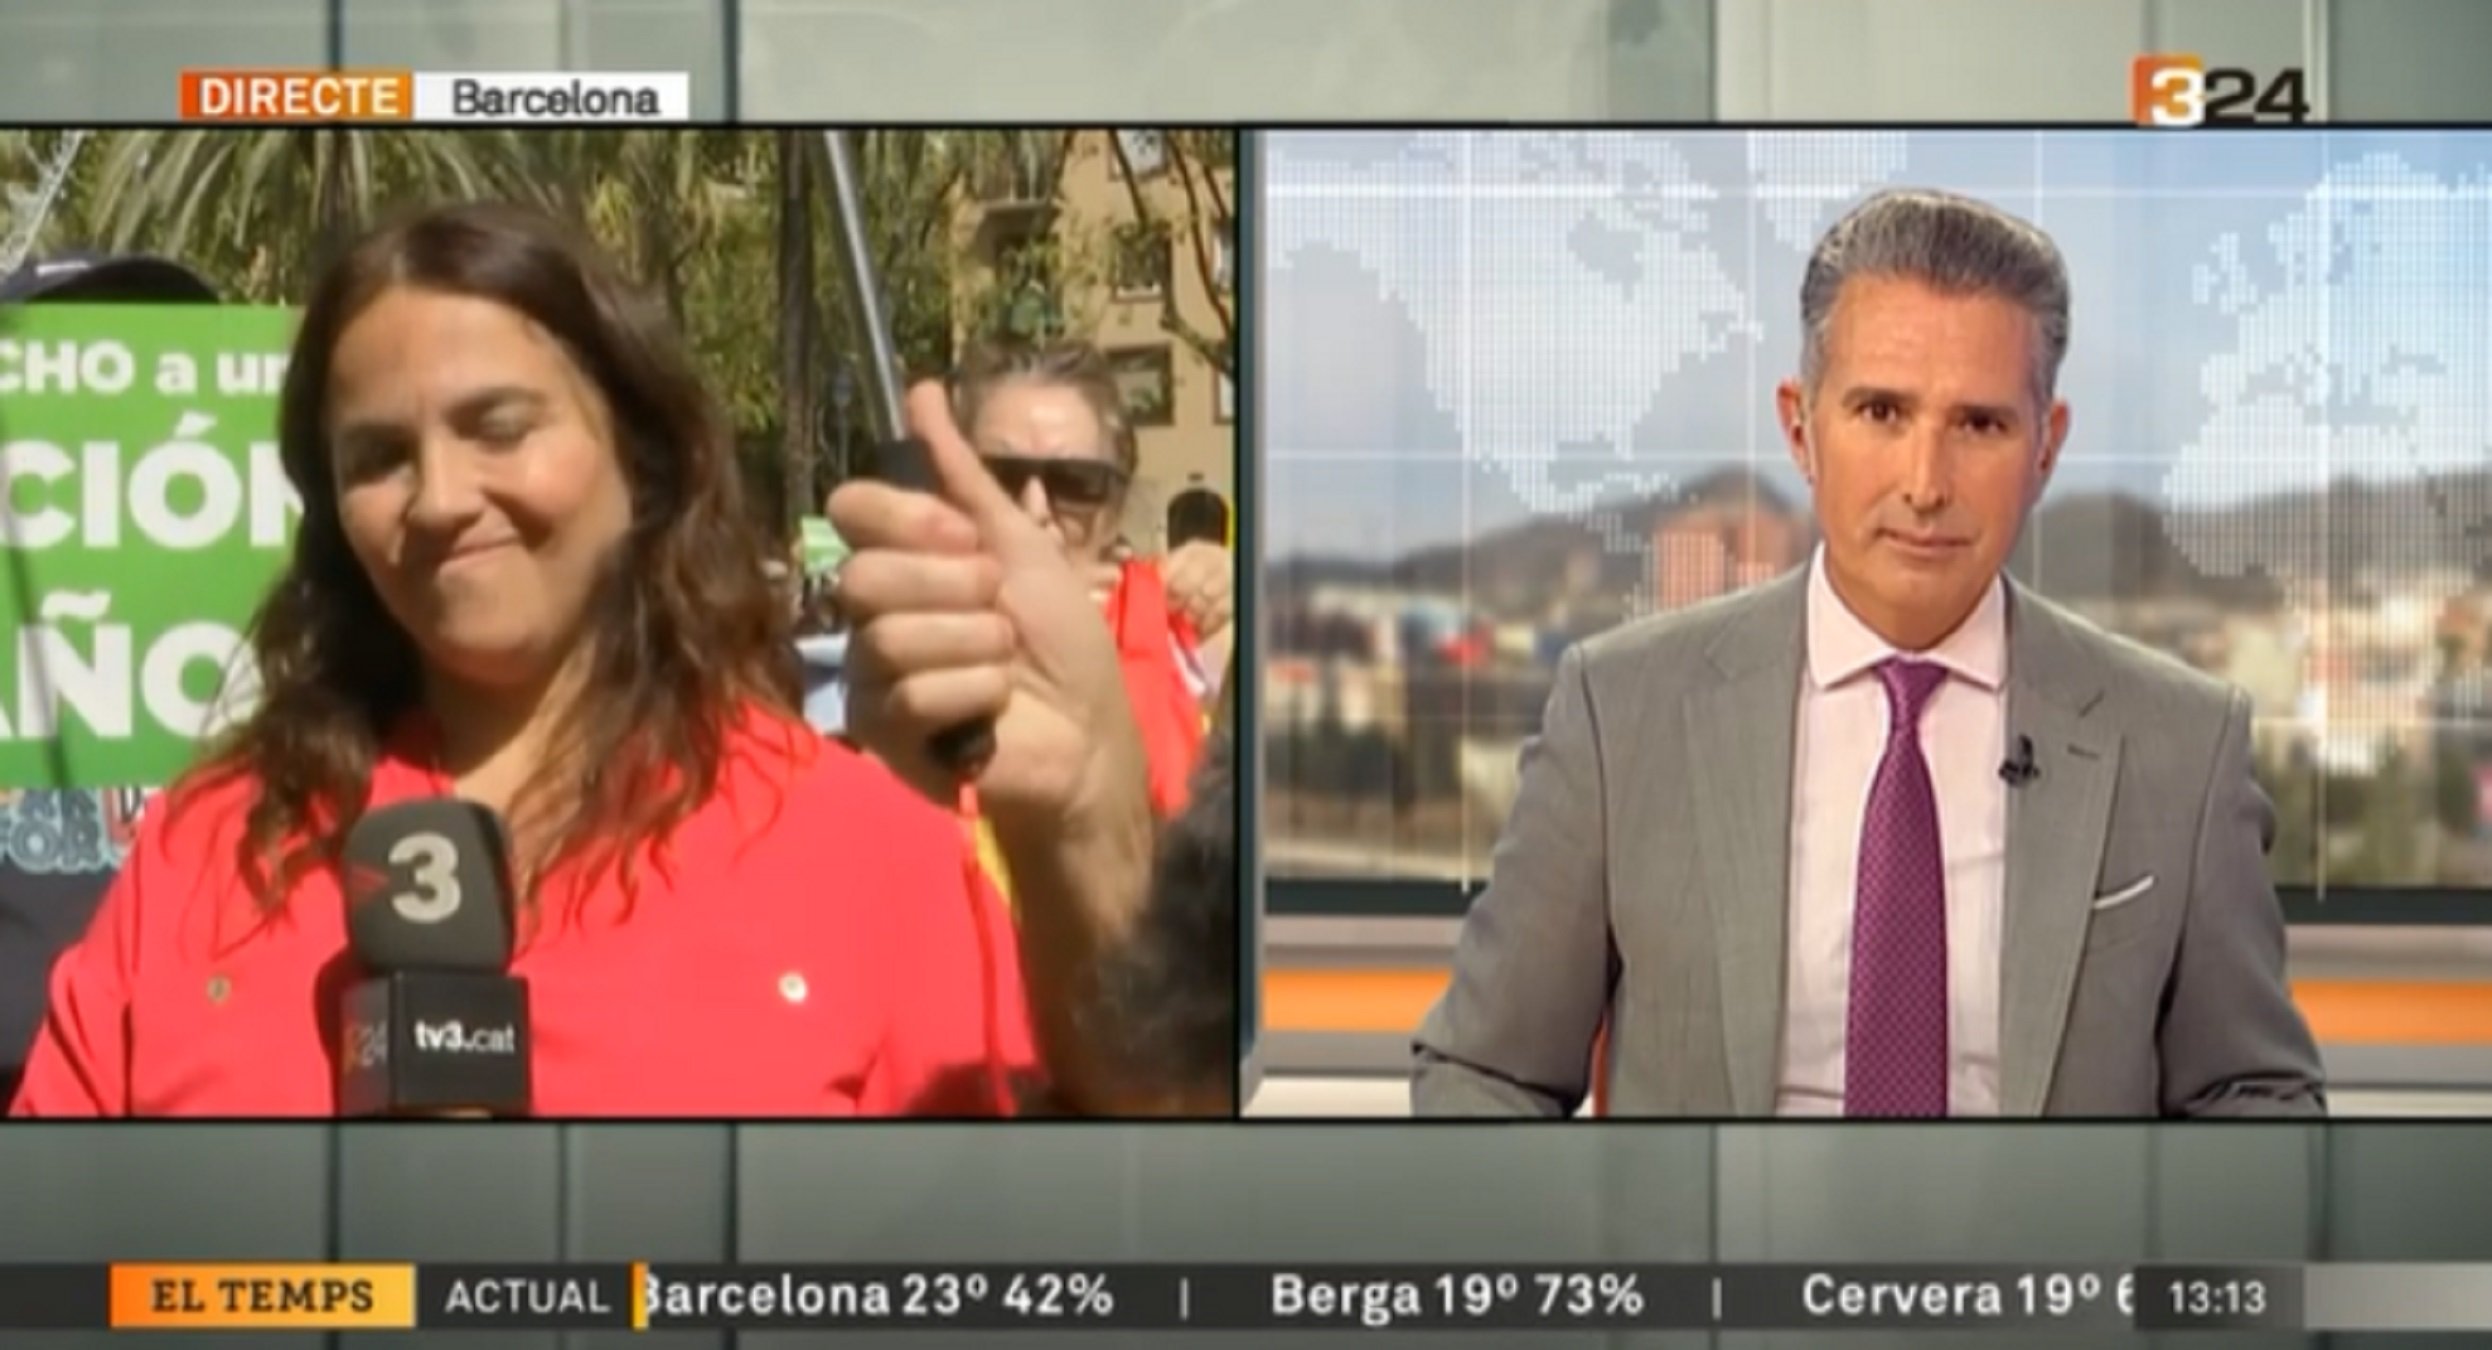 Golpe con una bandera española a la cámara de TV3 en la manifestación por el castellano: "No me empuje"